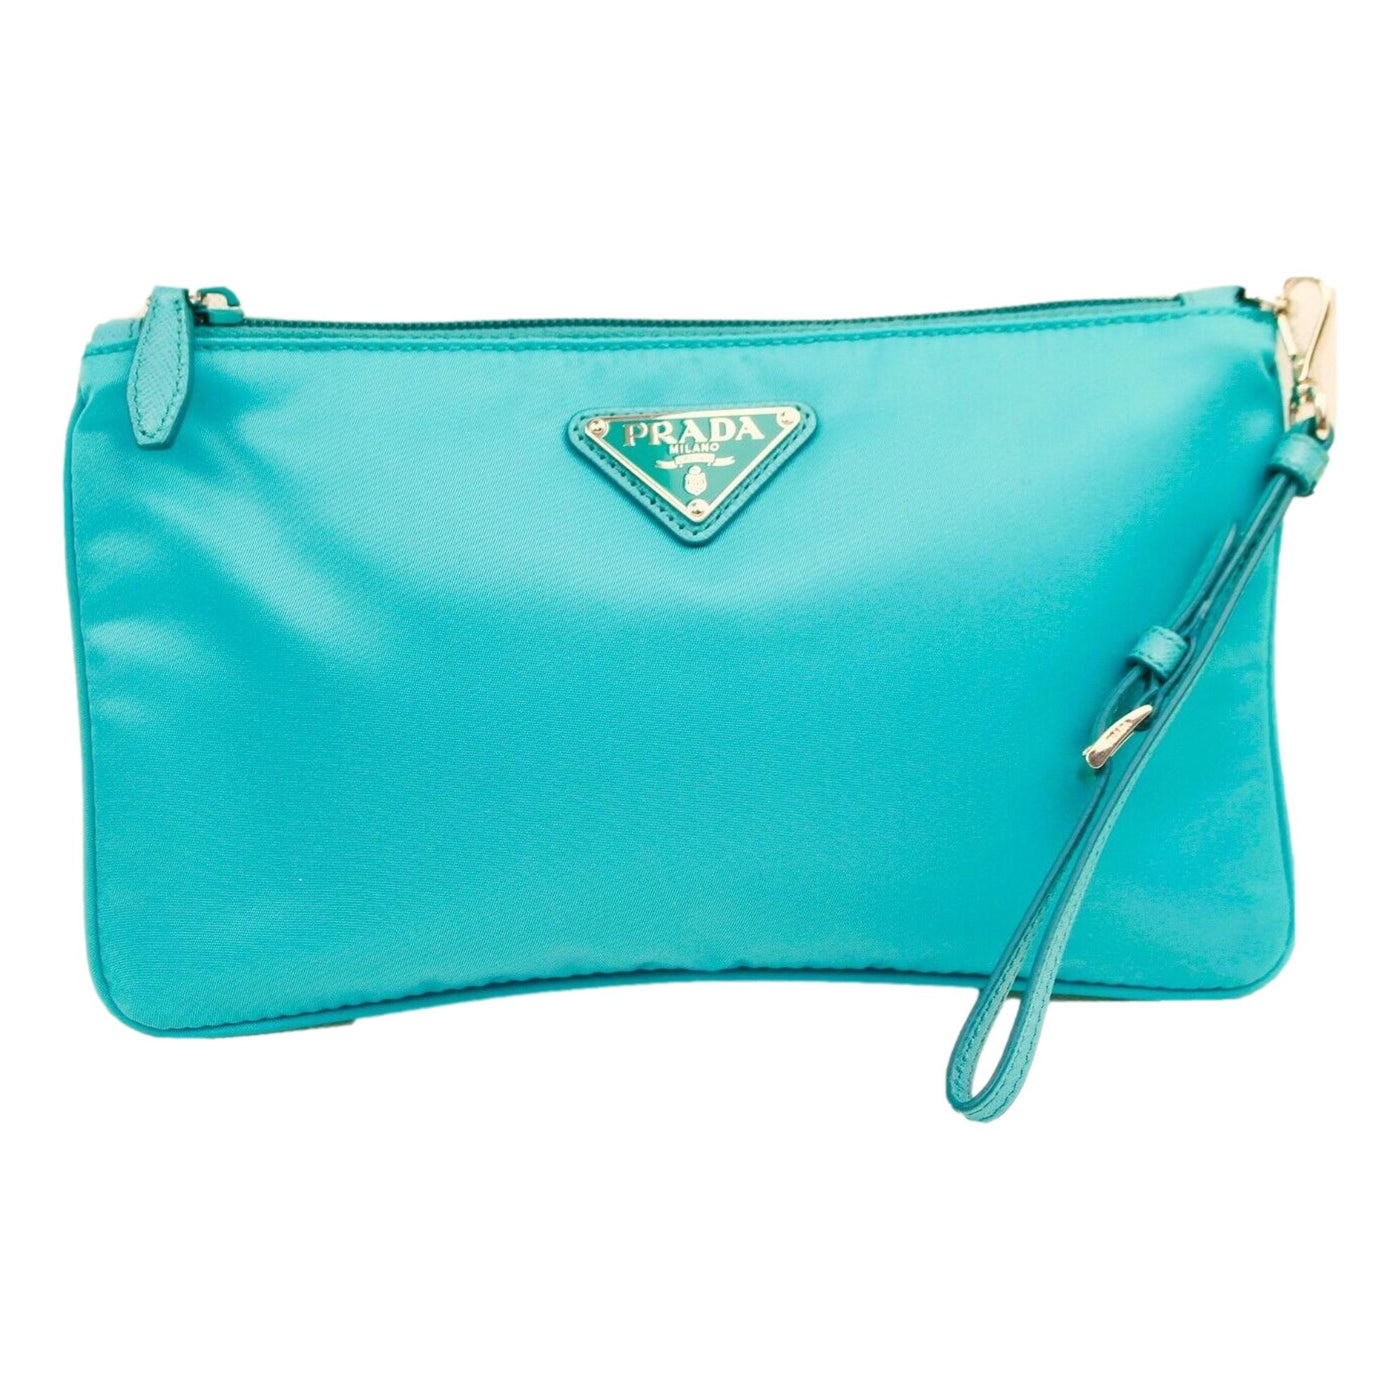 Prada Tessuto Turquoise Nylon Cosmetic Case Wristlet Clutch Bag - LUXURYMRKT